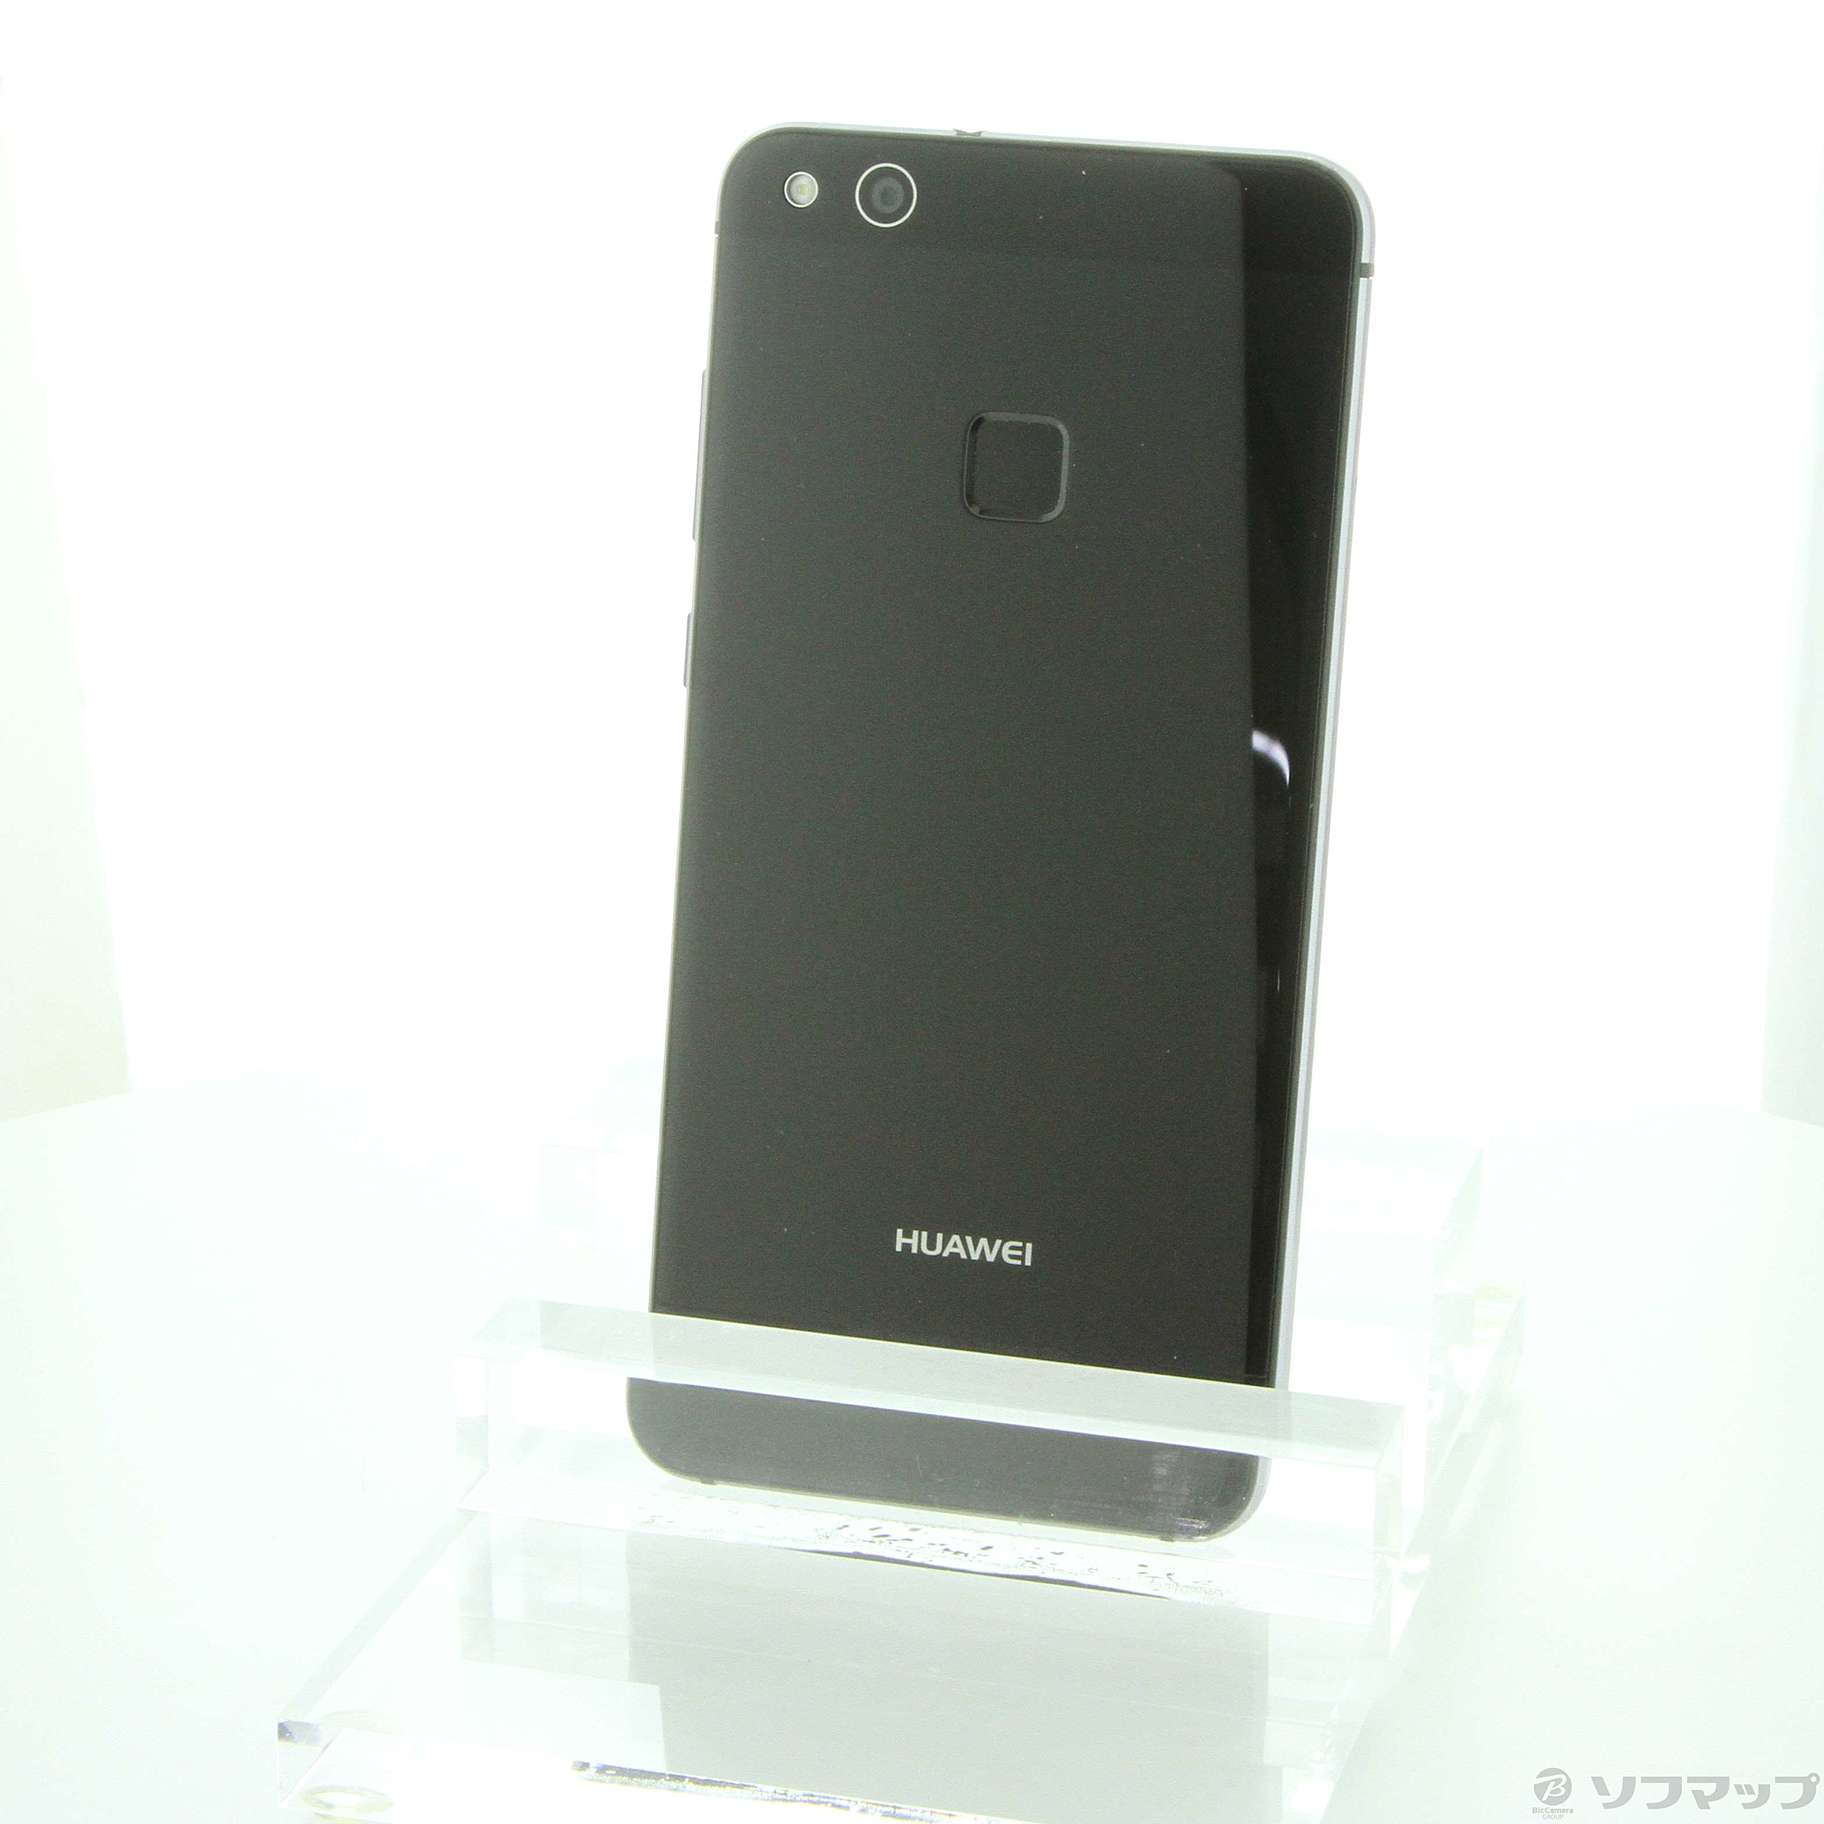 HUAWEI P10 lite Black 32 GB SIMフリースマートフォン/携帯電話